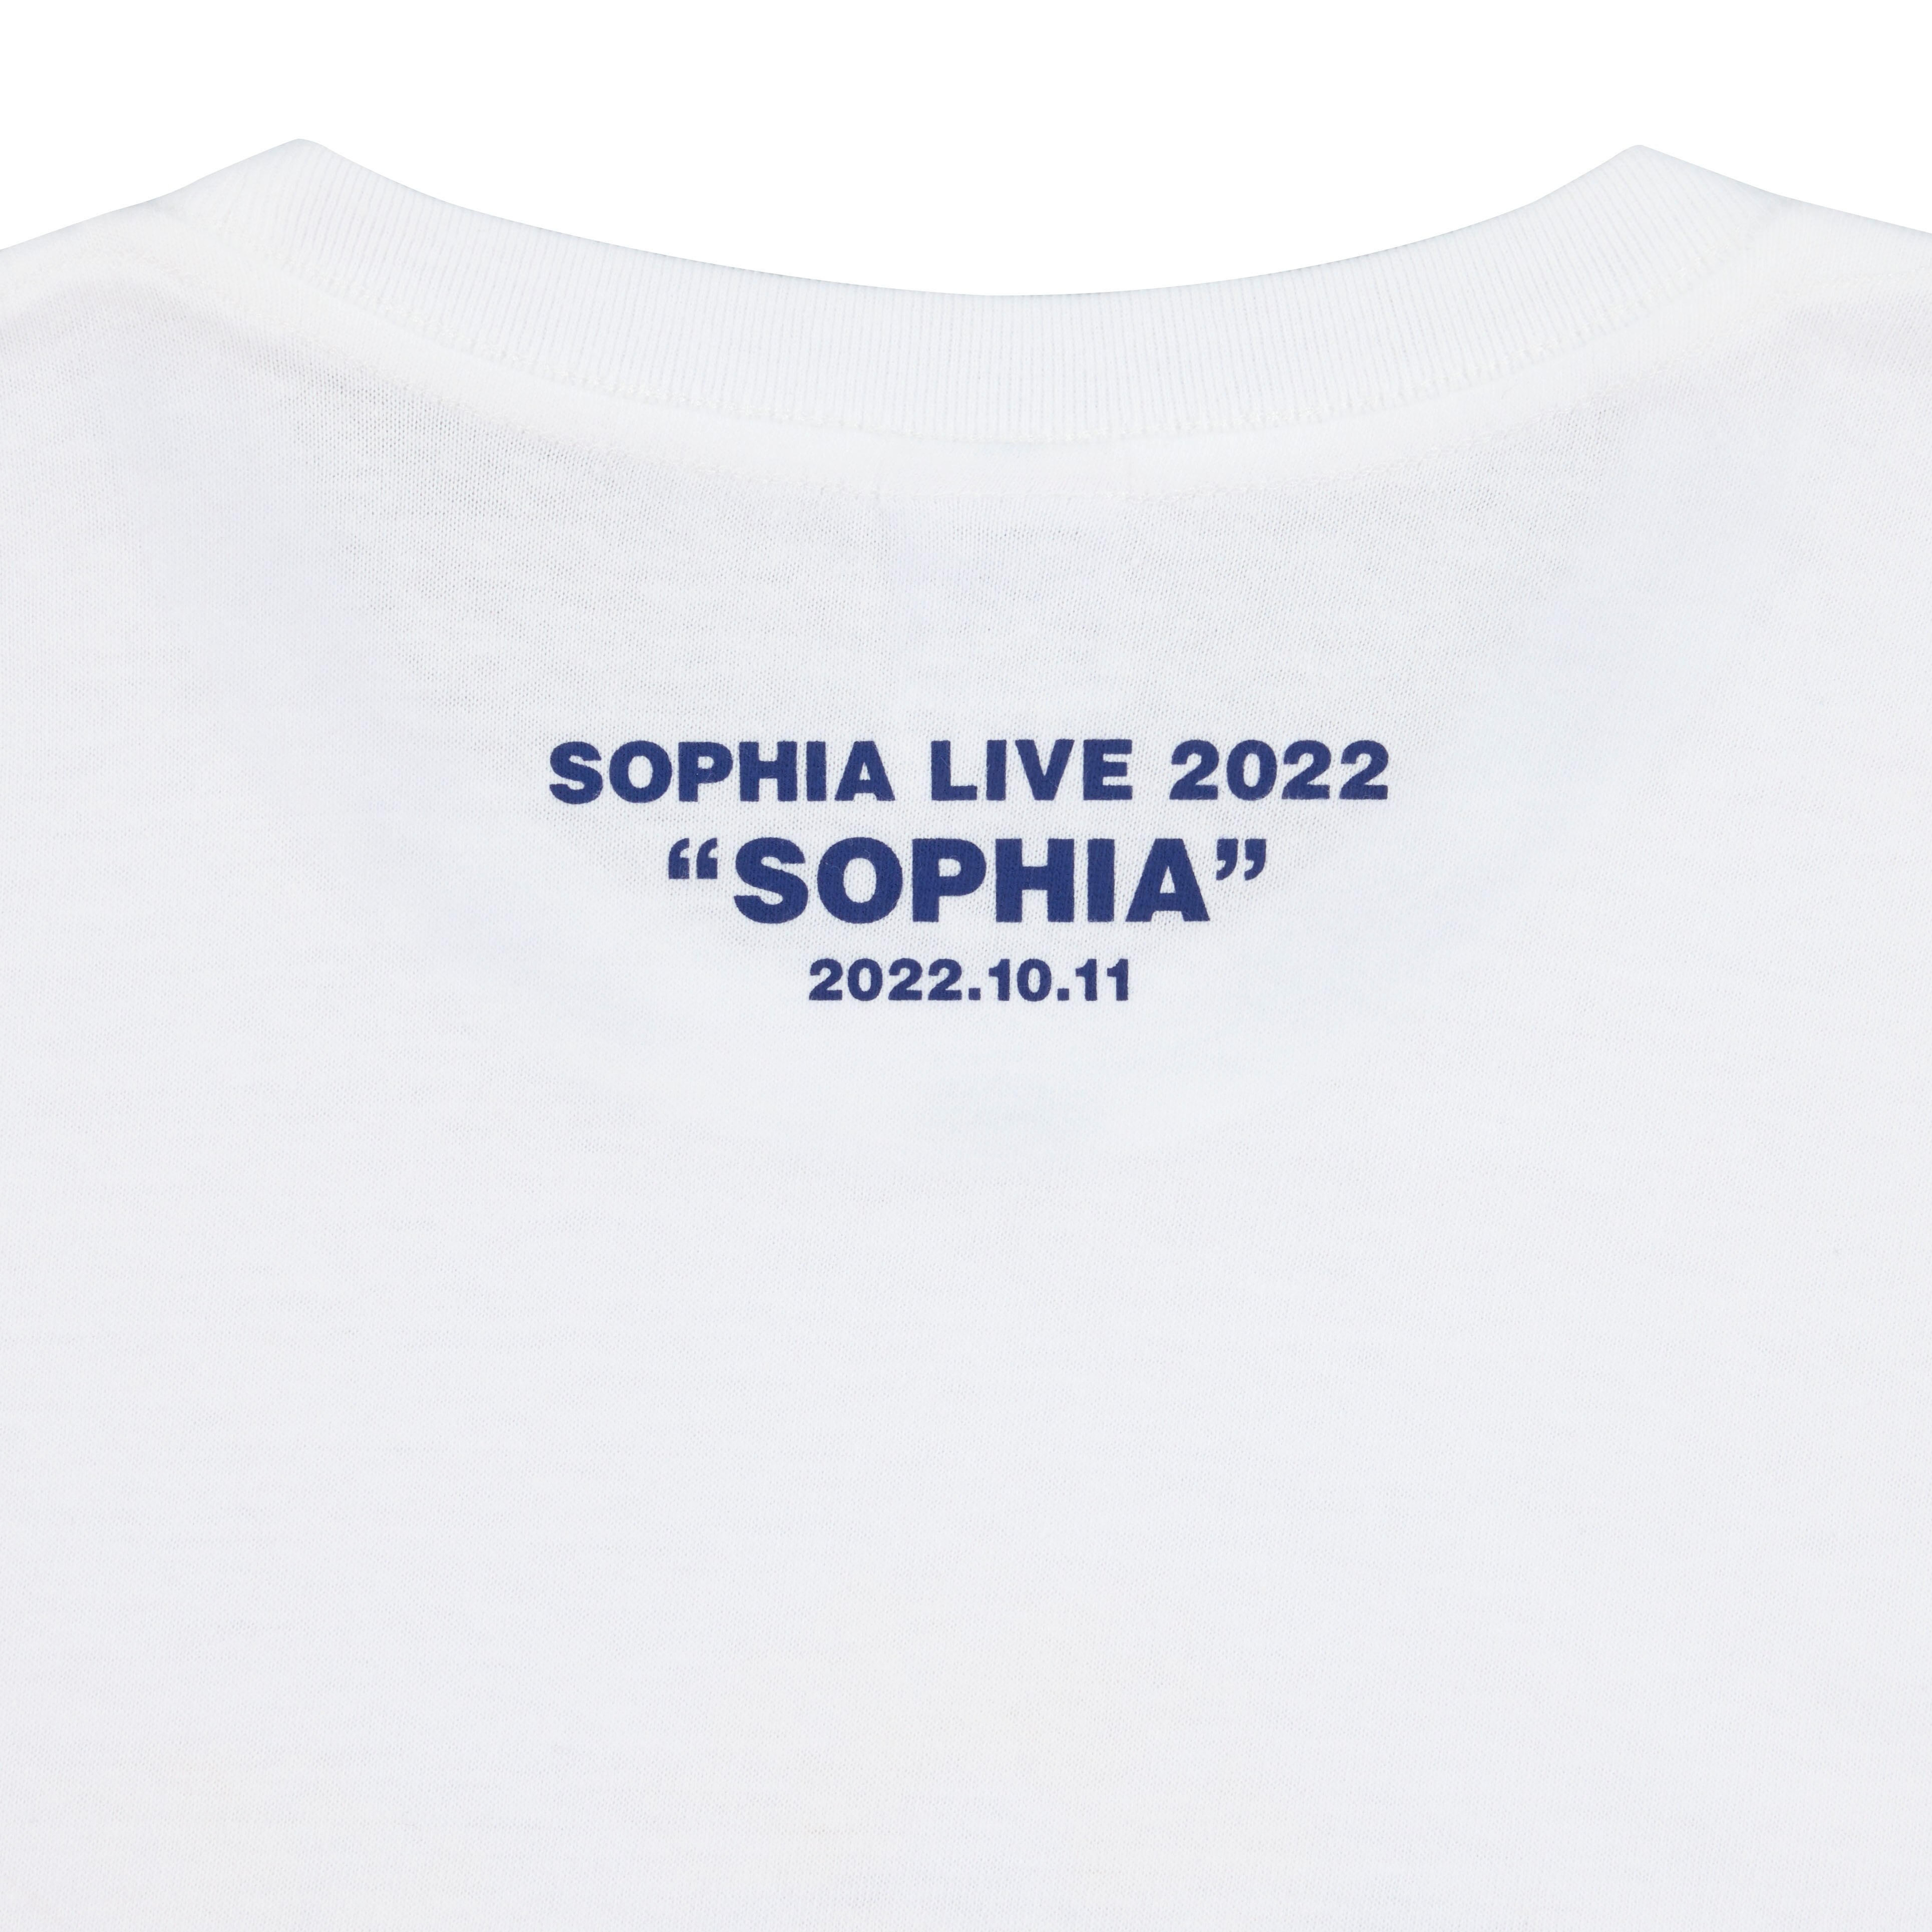 SOPHIA LIVE 2022 “SOPHIA” 記念グッズ発売決定！ - NEWS | SOPHIA